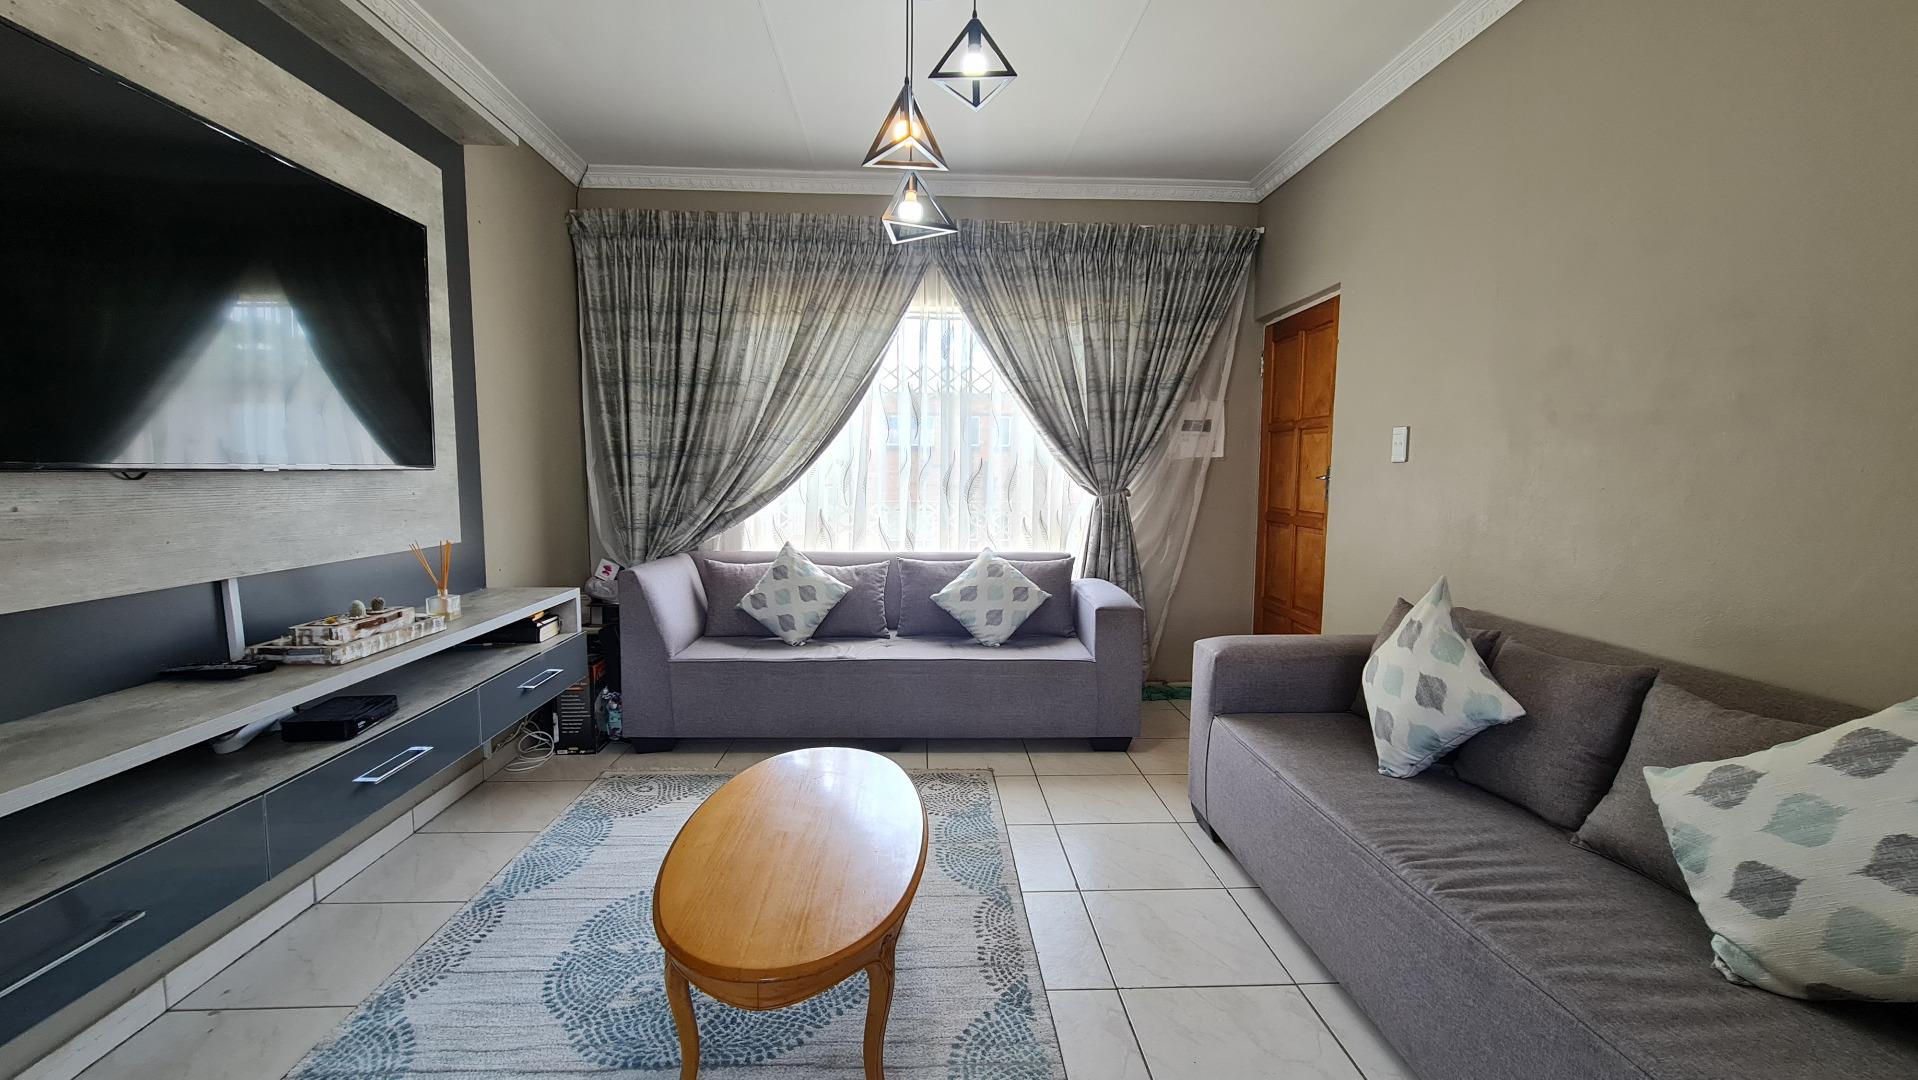 2 Bedroom Apartment for Sale - Gauteng